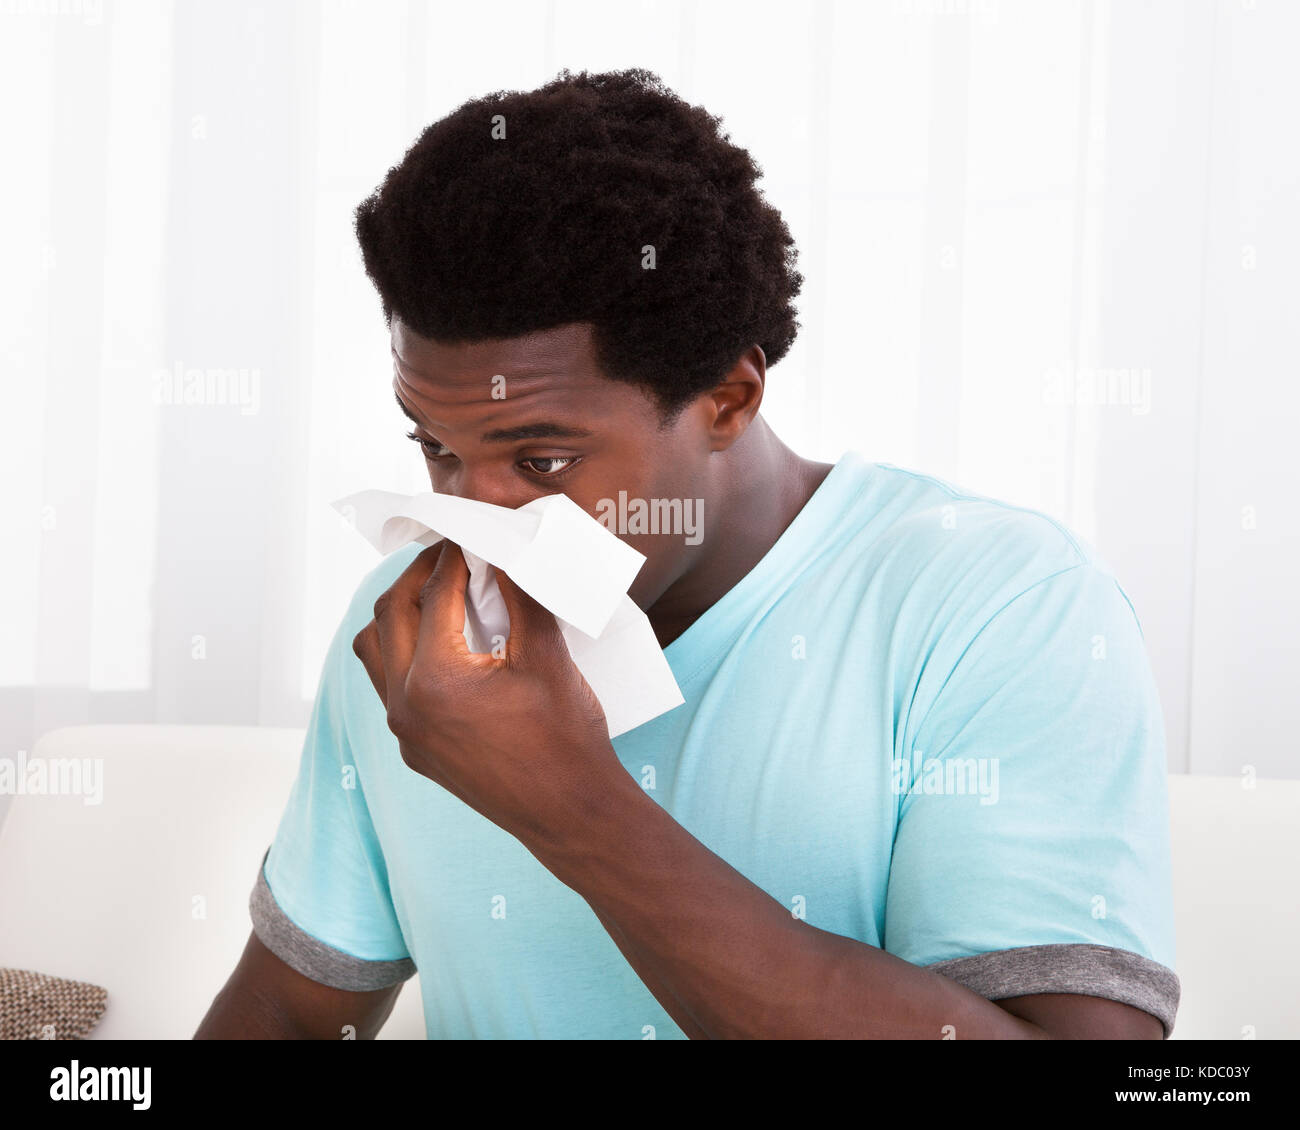 African giovane uomo avente un freddo il trattenimento del tessuto e soffiare il naso Foto Stock